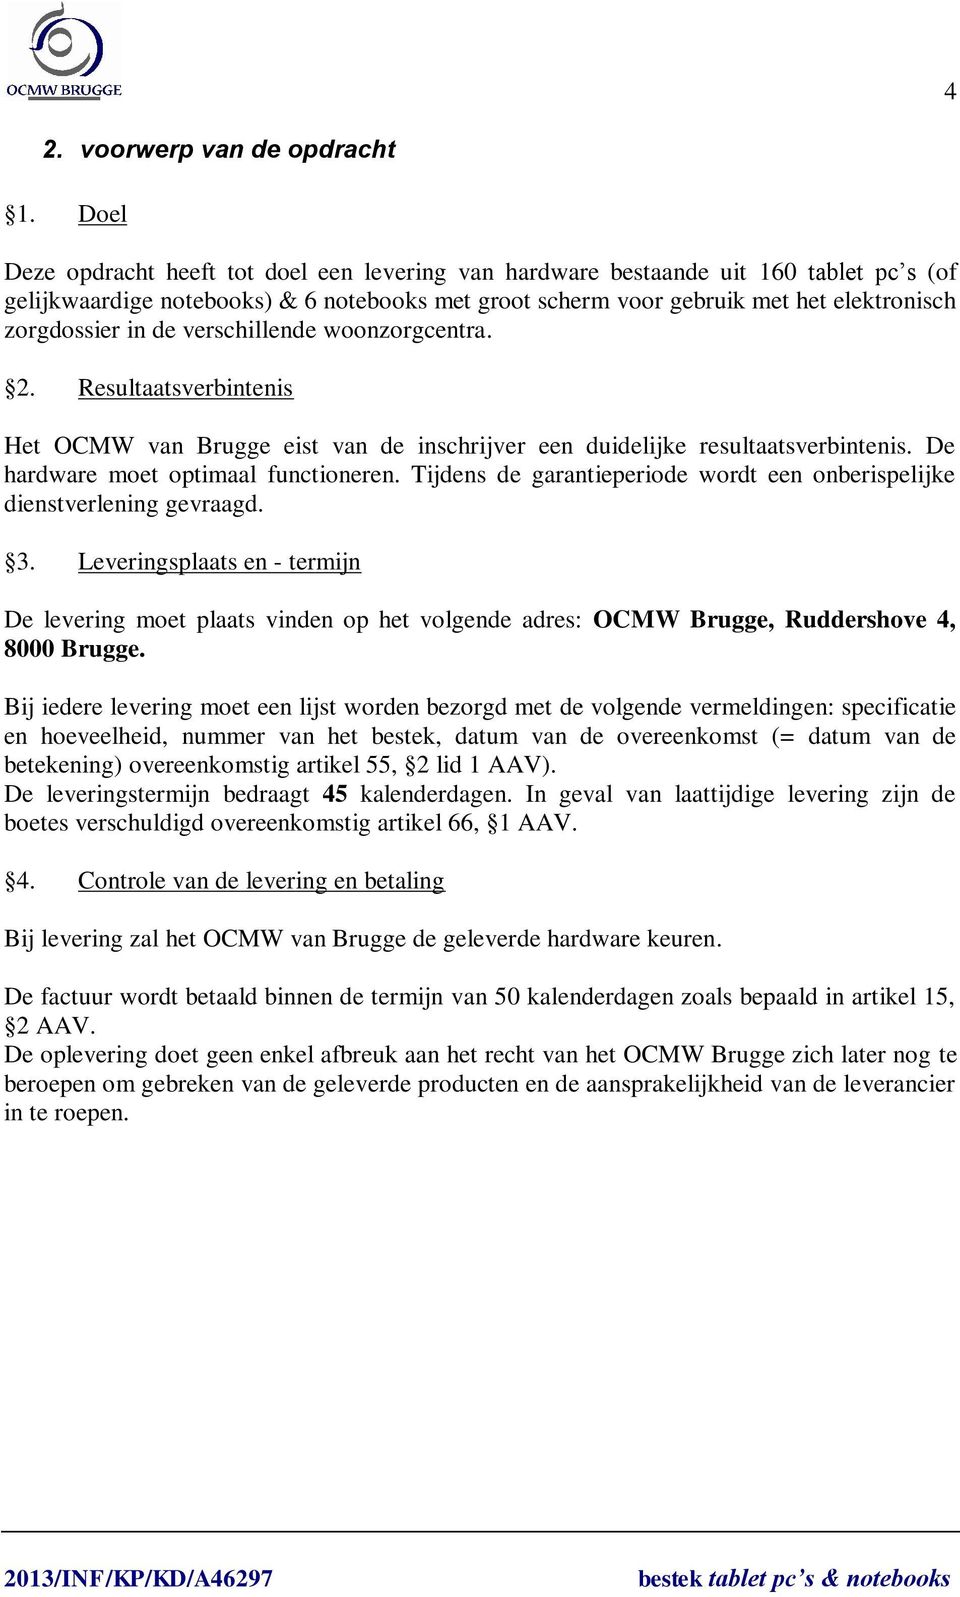 de verschillende woonzorgcentra. 2. Resultaatsverbintenis Het OCMW van Brugge eist van de inschrijver een duidelijke resultaatsverbintenis. De hardware moet optimaal functioneren.